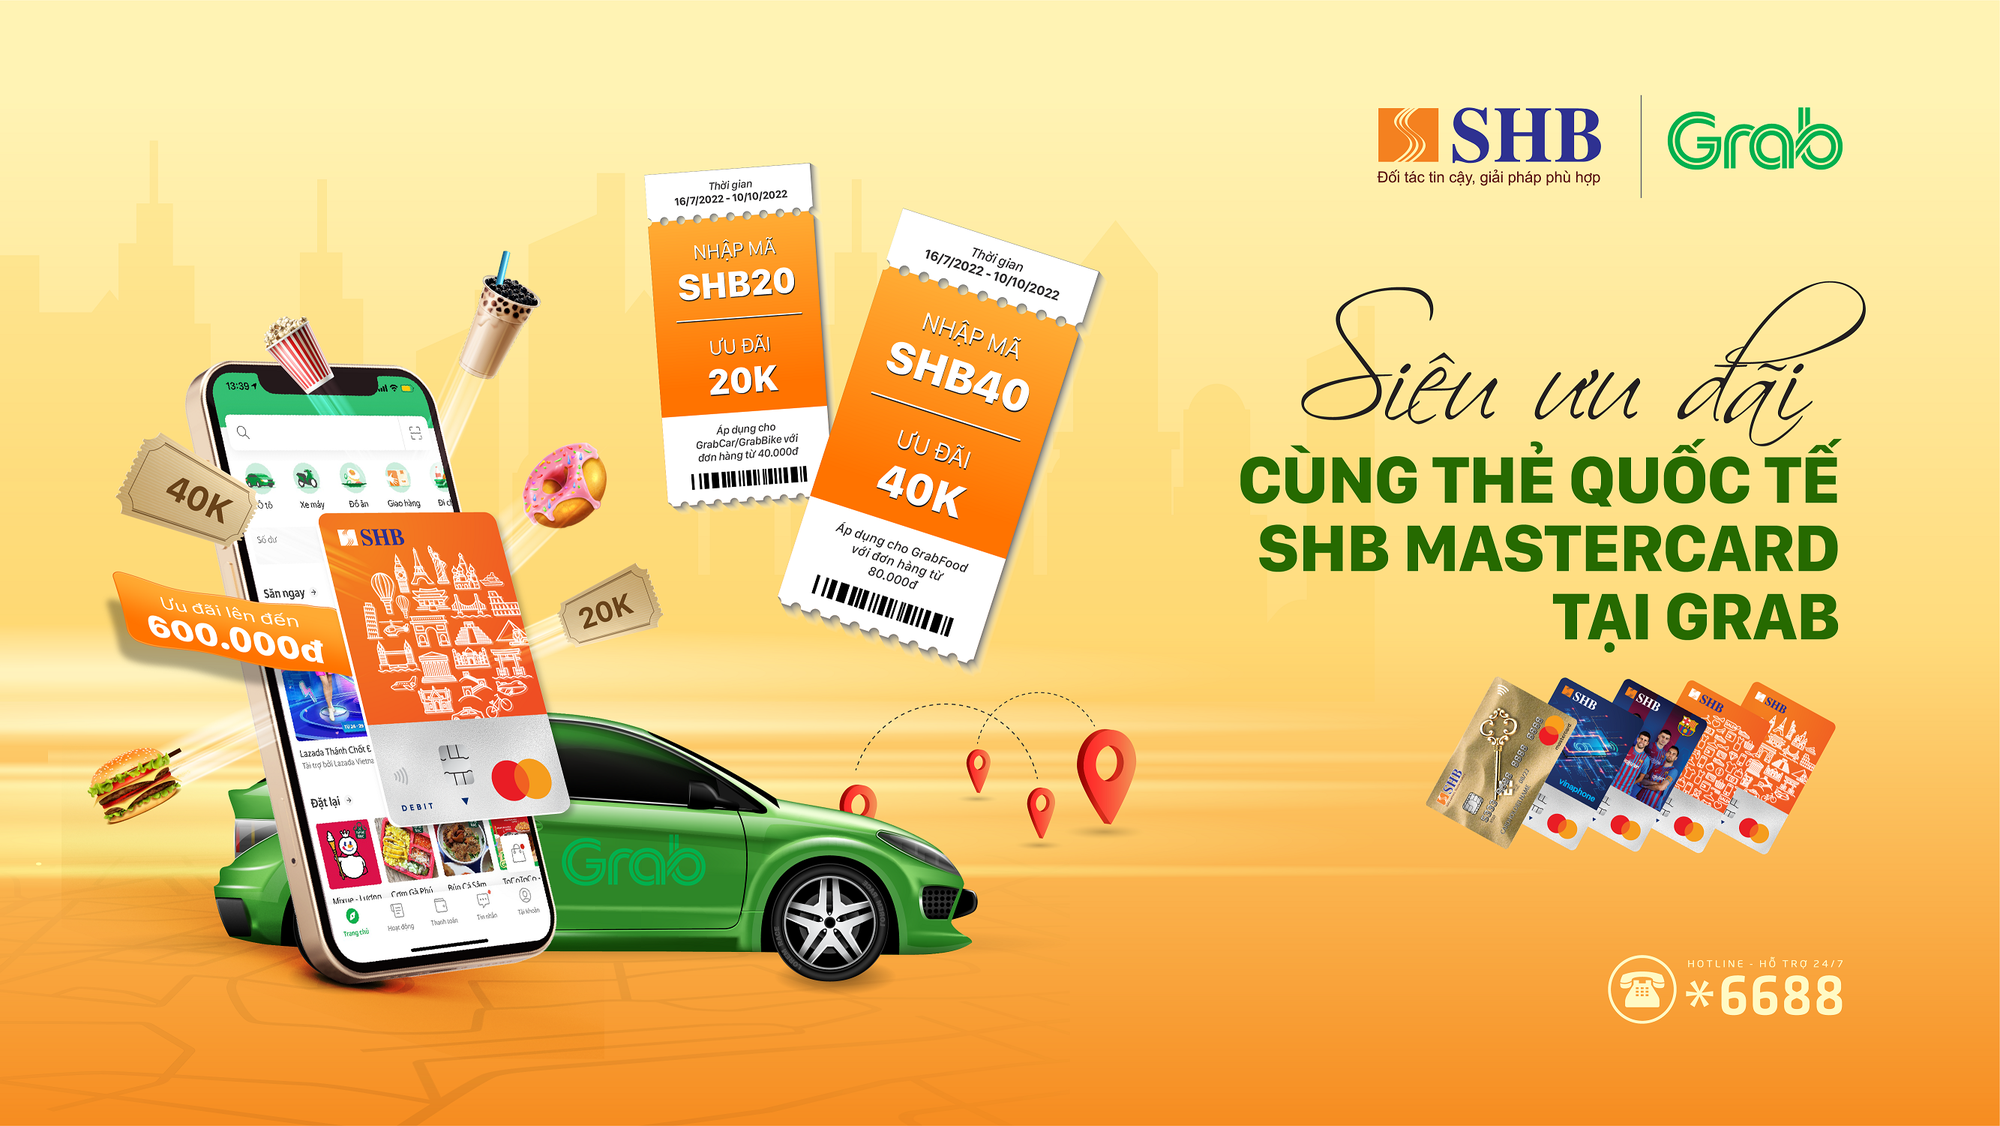 Giảm giá lên tới 600.000 đồng cho chủ thẻ quốc tế SHB MasterCard khi sử dụng Grab - Ảnh 1.